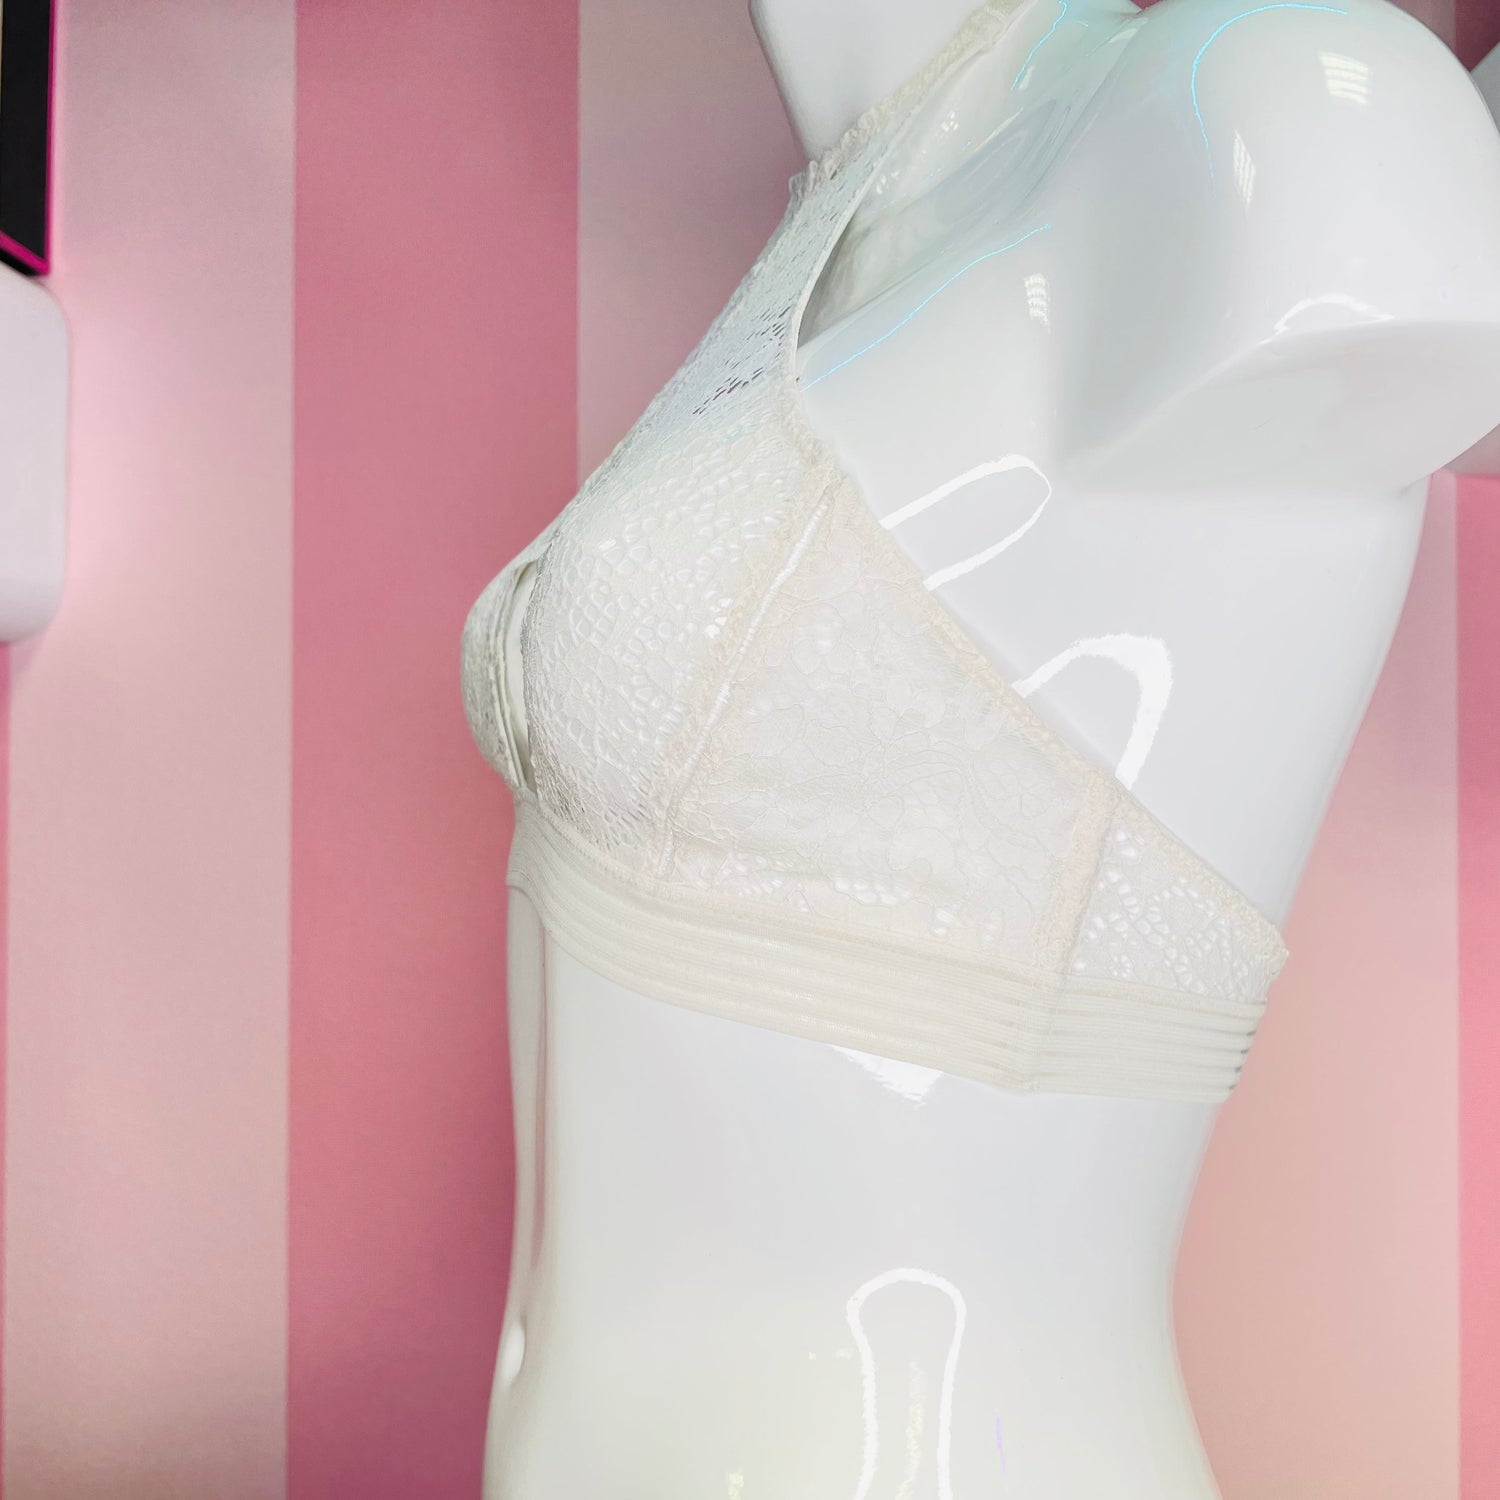 Victoria’s Secret VERY SEXY Lace Bralette - S / Bílá / Nové se štítky - Braletka